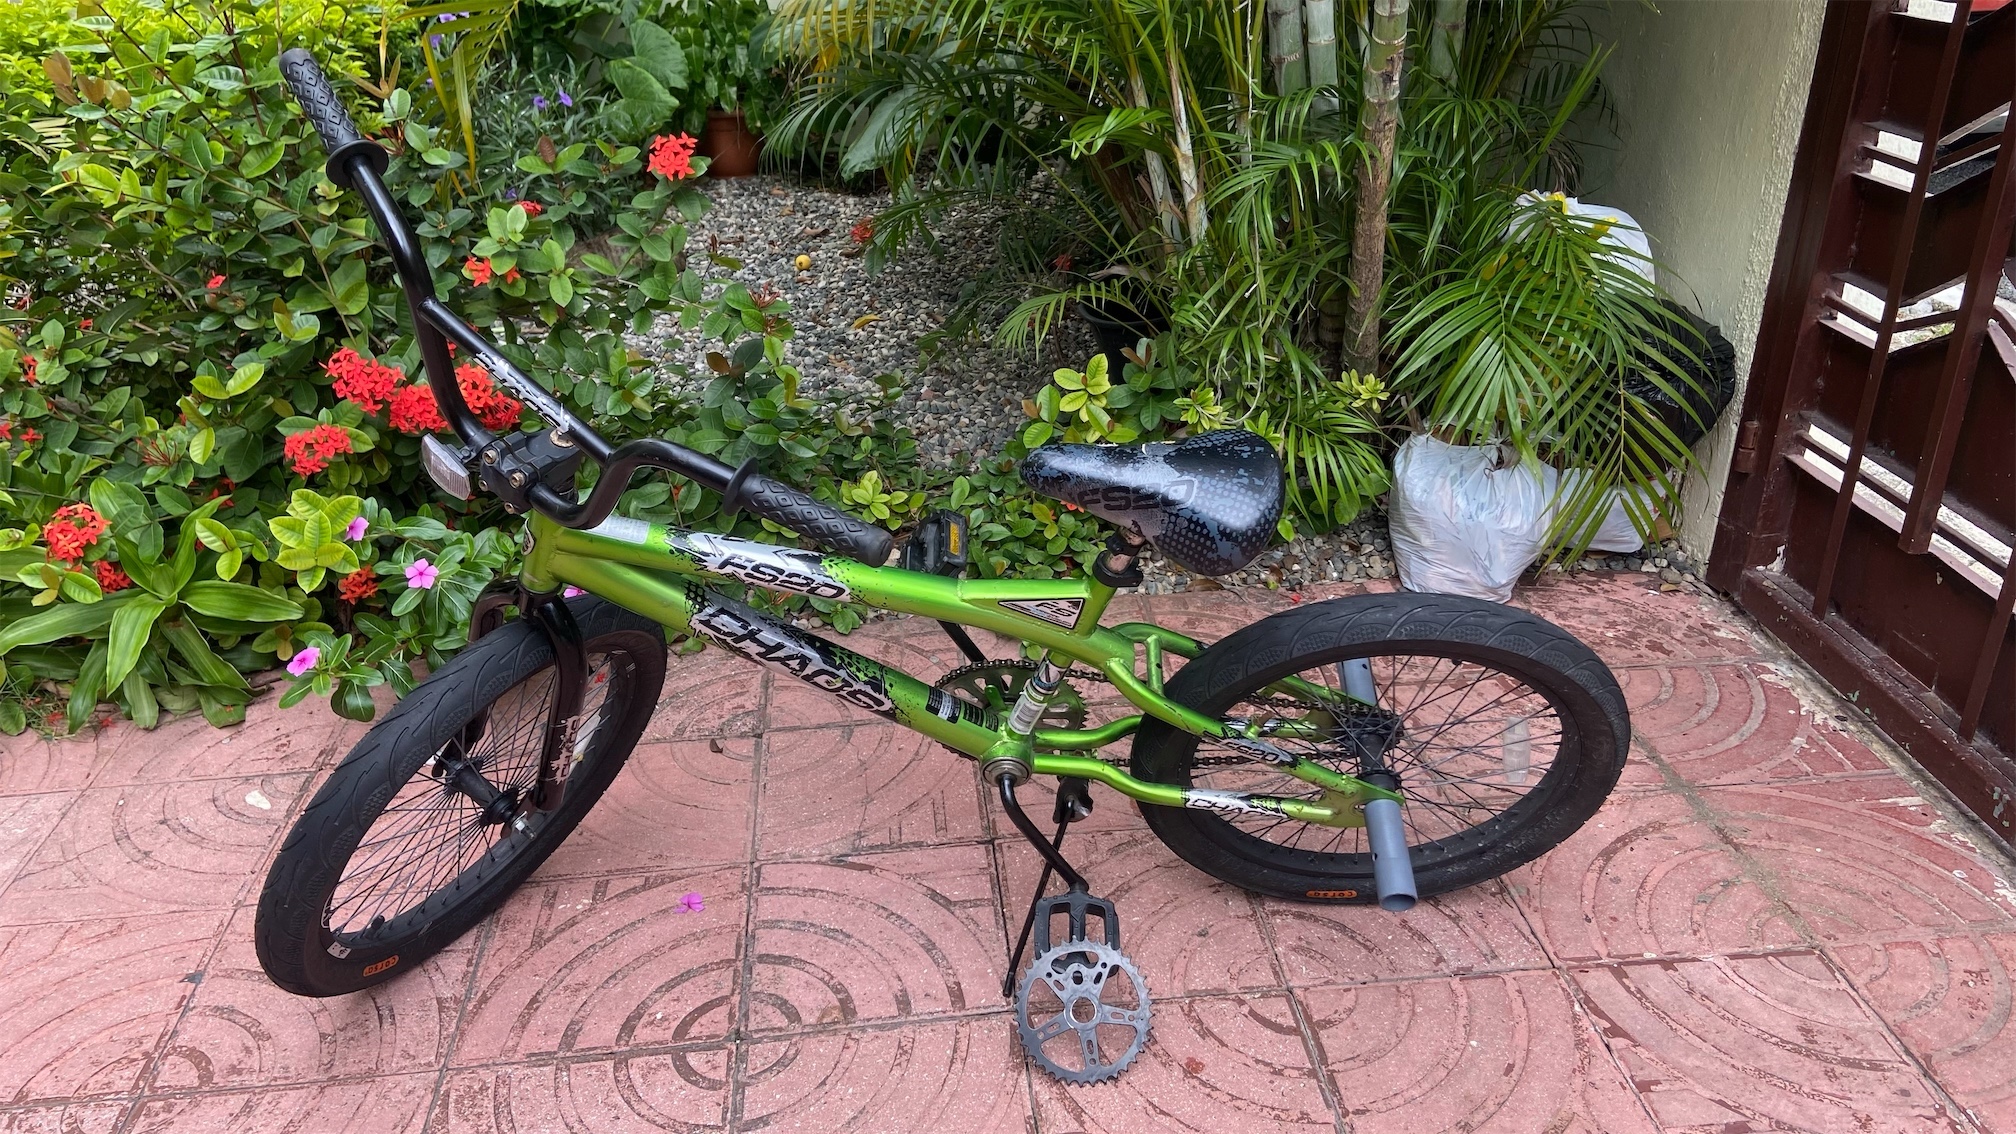 bicicletas y accesorios - Bicicleta BMX (de maniobras) 0